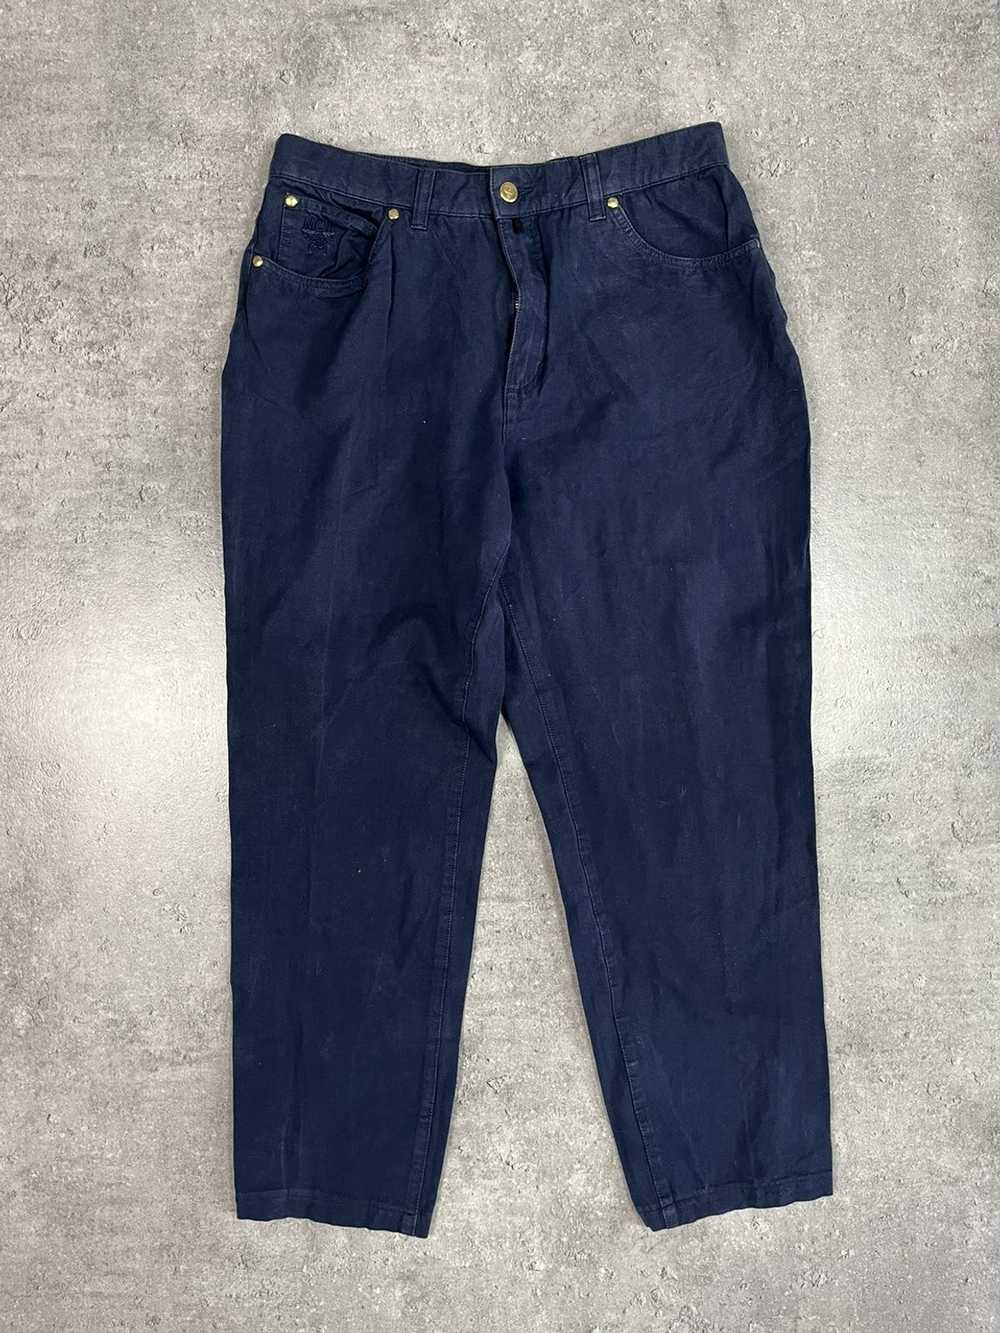 Designer × MCM × Vintage MCM navy jeans vintage 9… - image 7